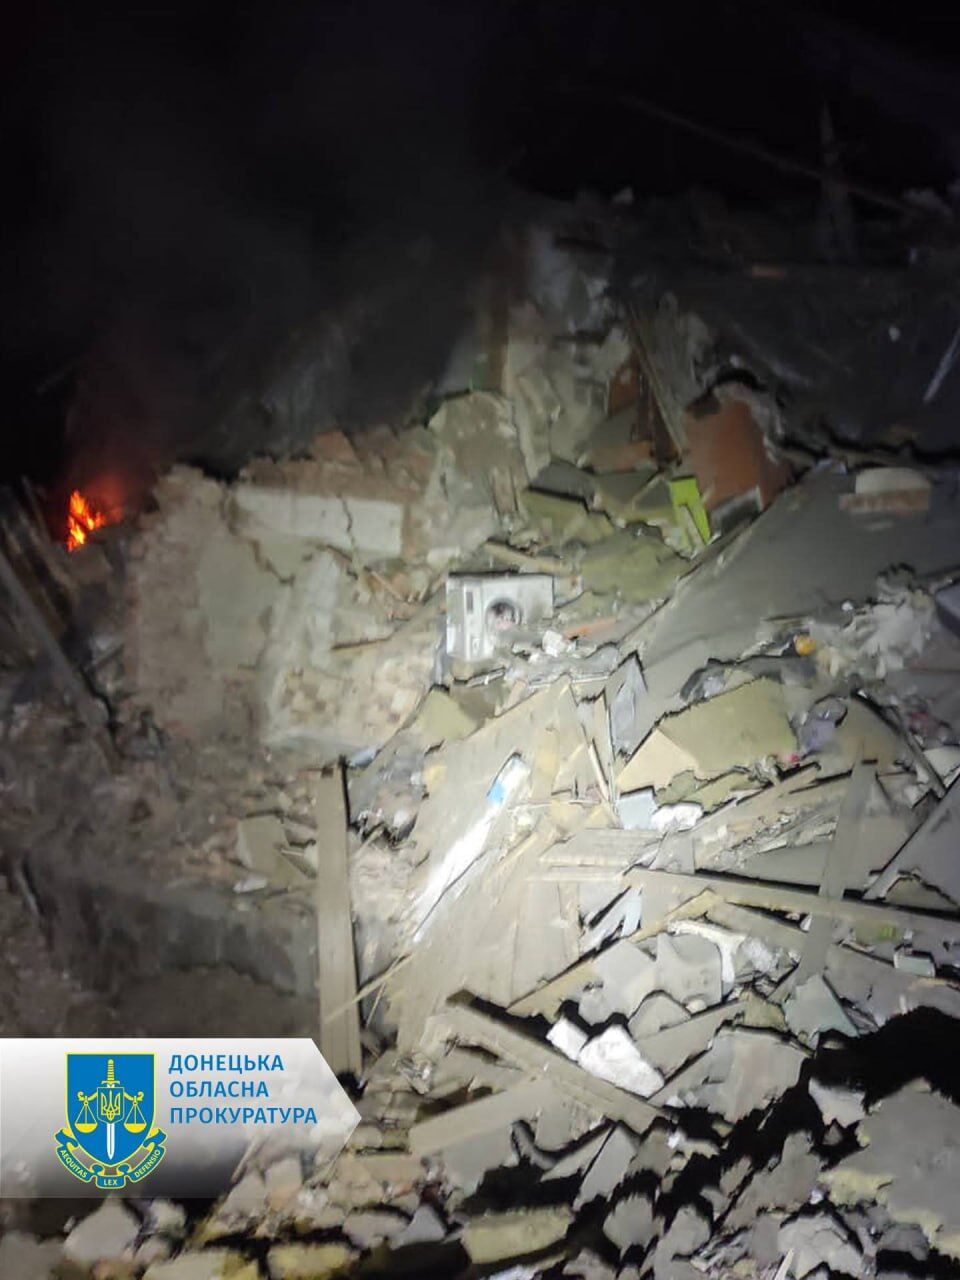 Россияне нанесли ракетный удар по Курахово на Донбассе: 16 гражданских лиц получили ранения. Фото и видео